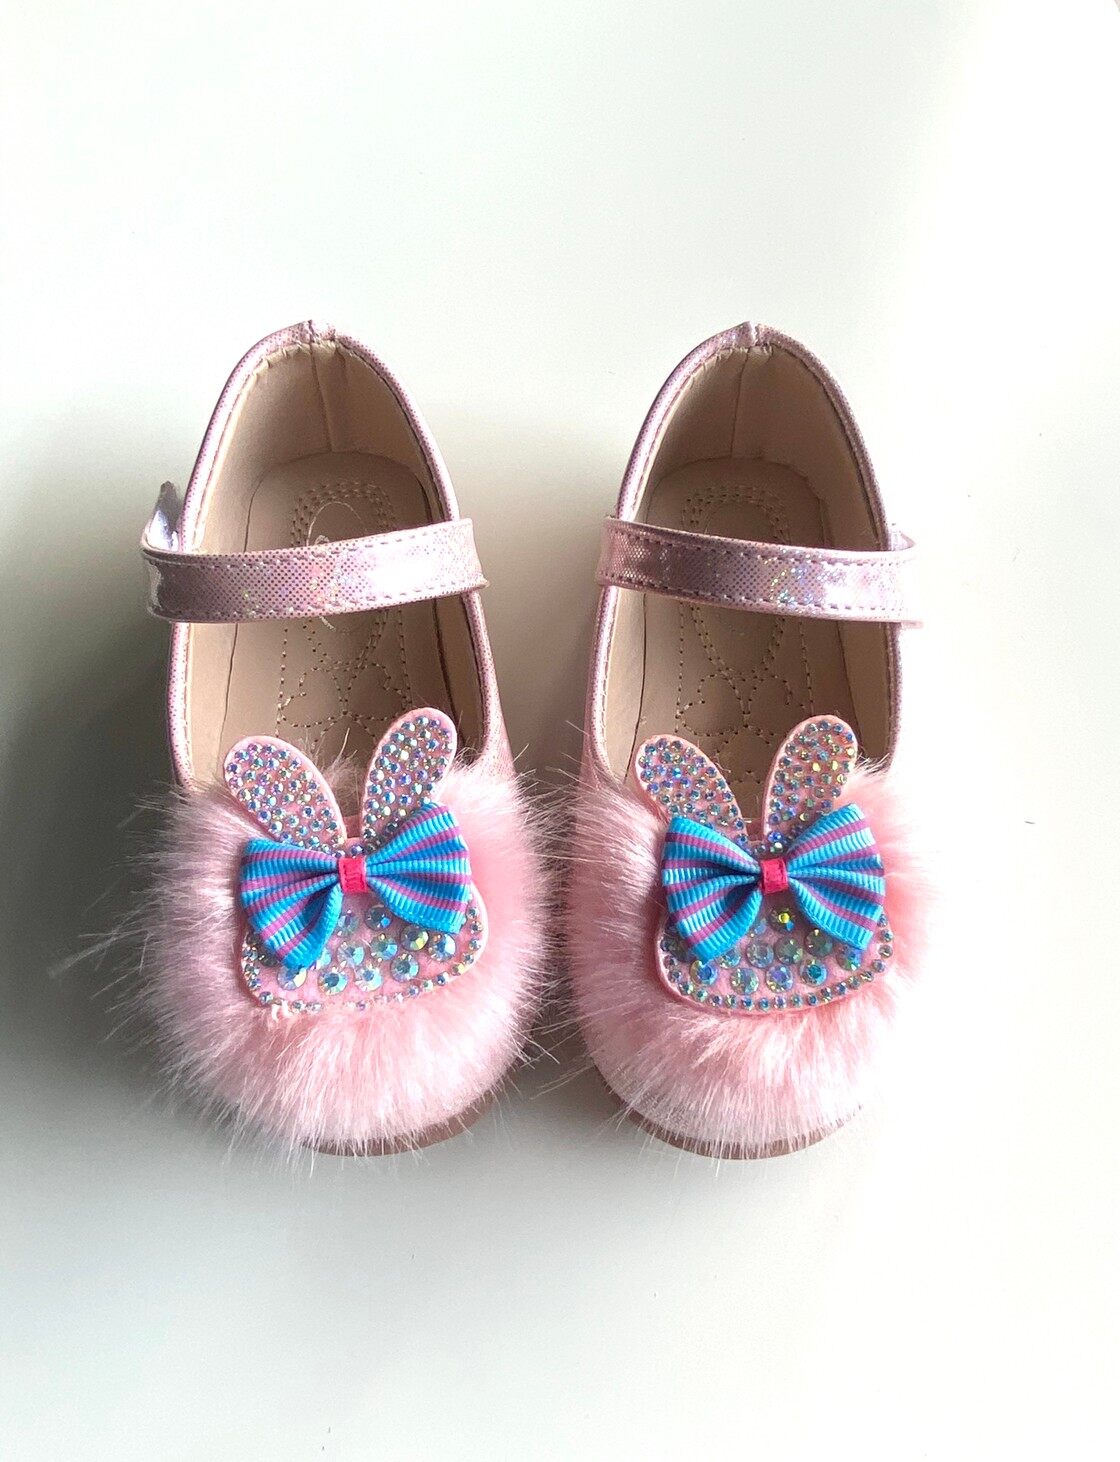 9021 รองเท้าคัทชูเด็กหญิงหนังเงา ประดับกระต่ายผูกโบว์  ไซส์ 21-30 มี2สี ขาว ชมพู